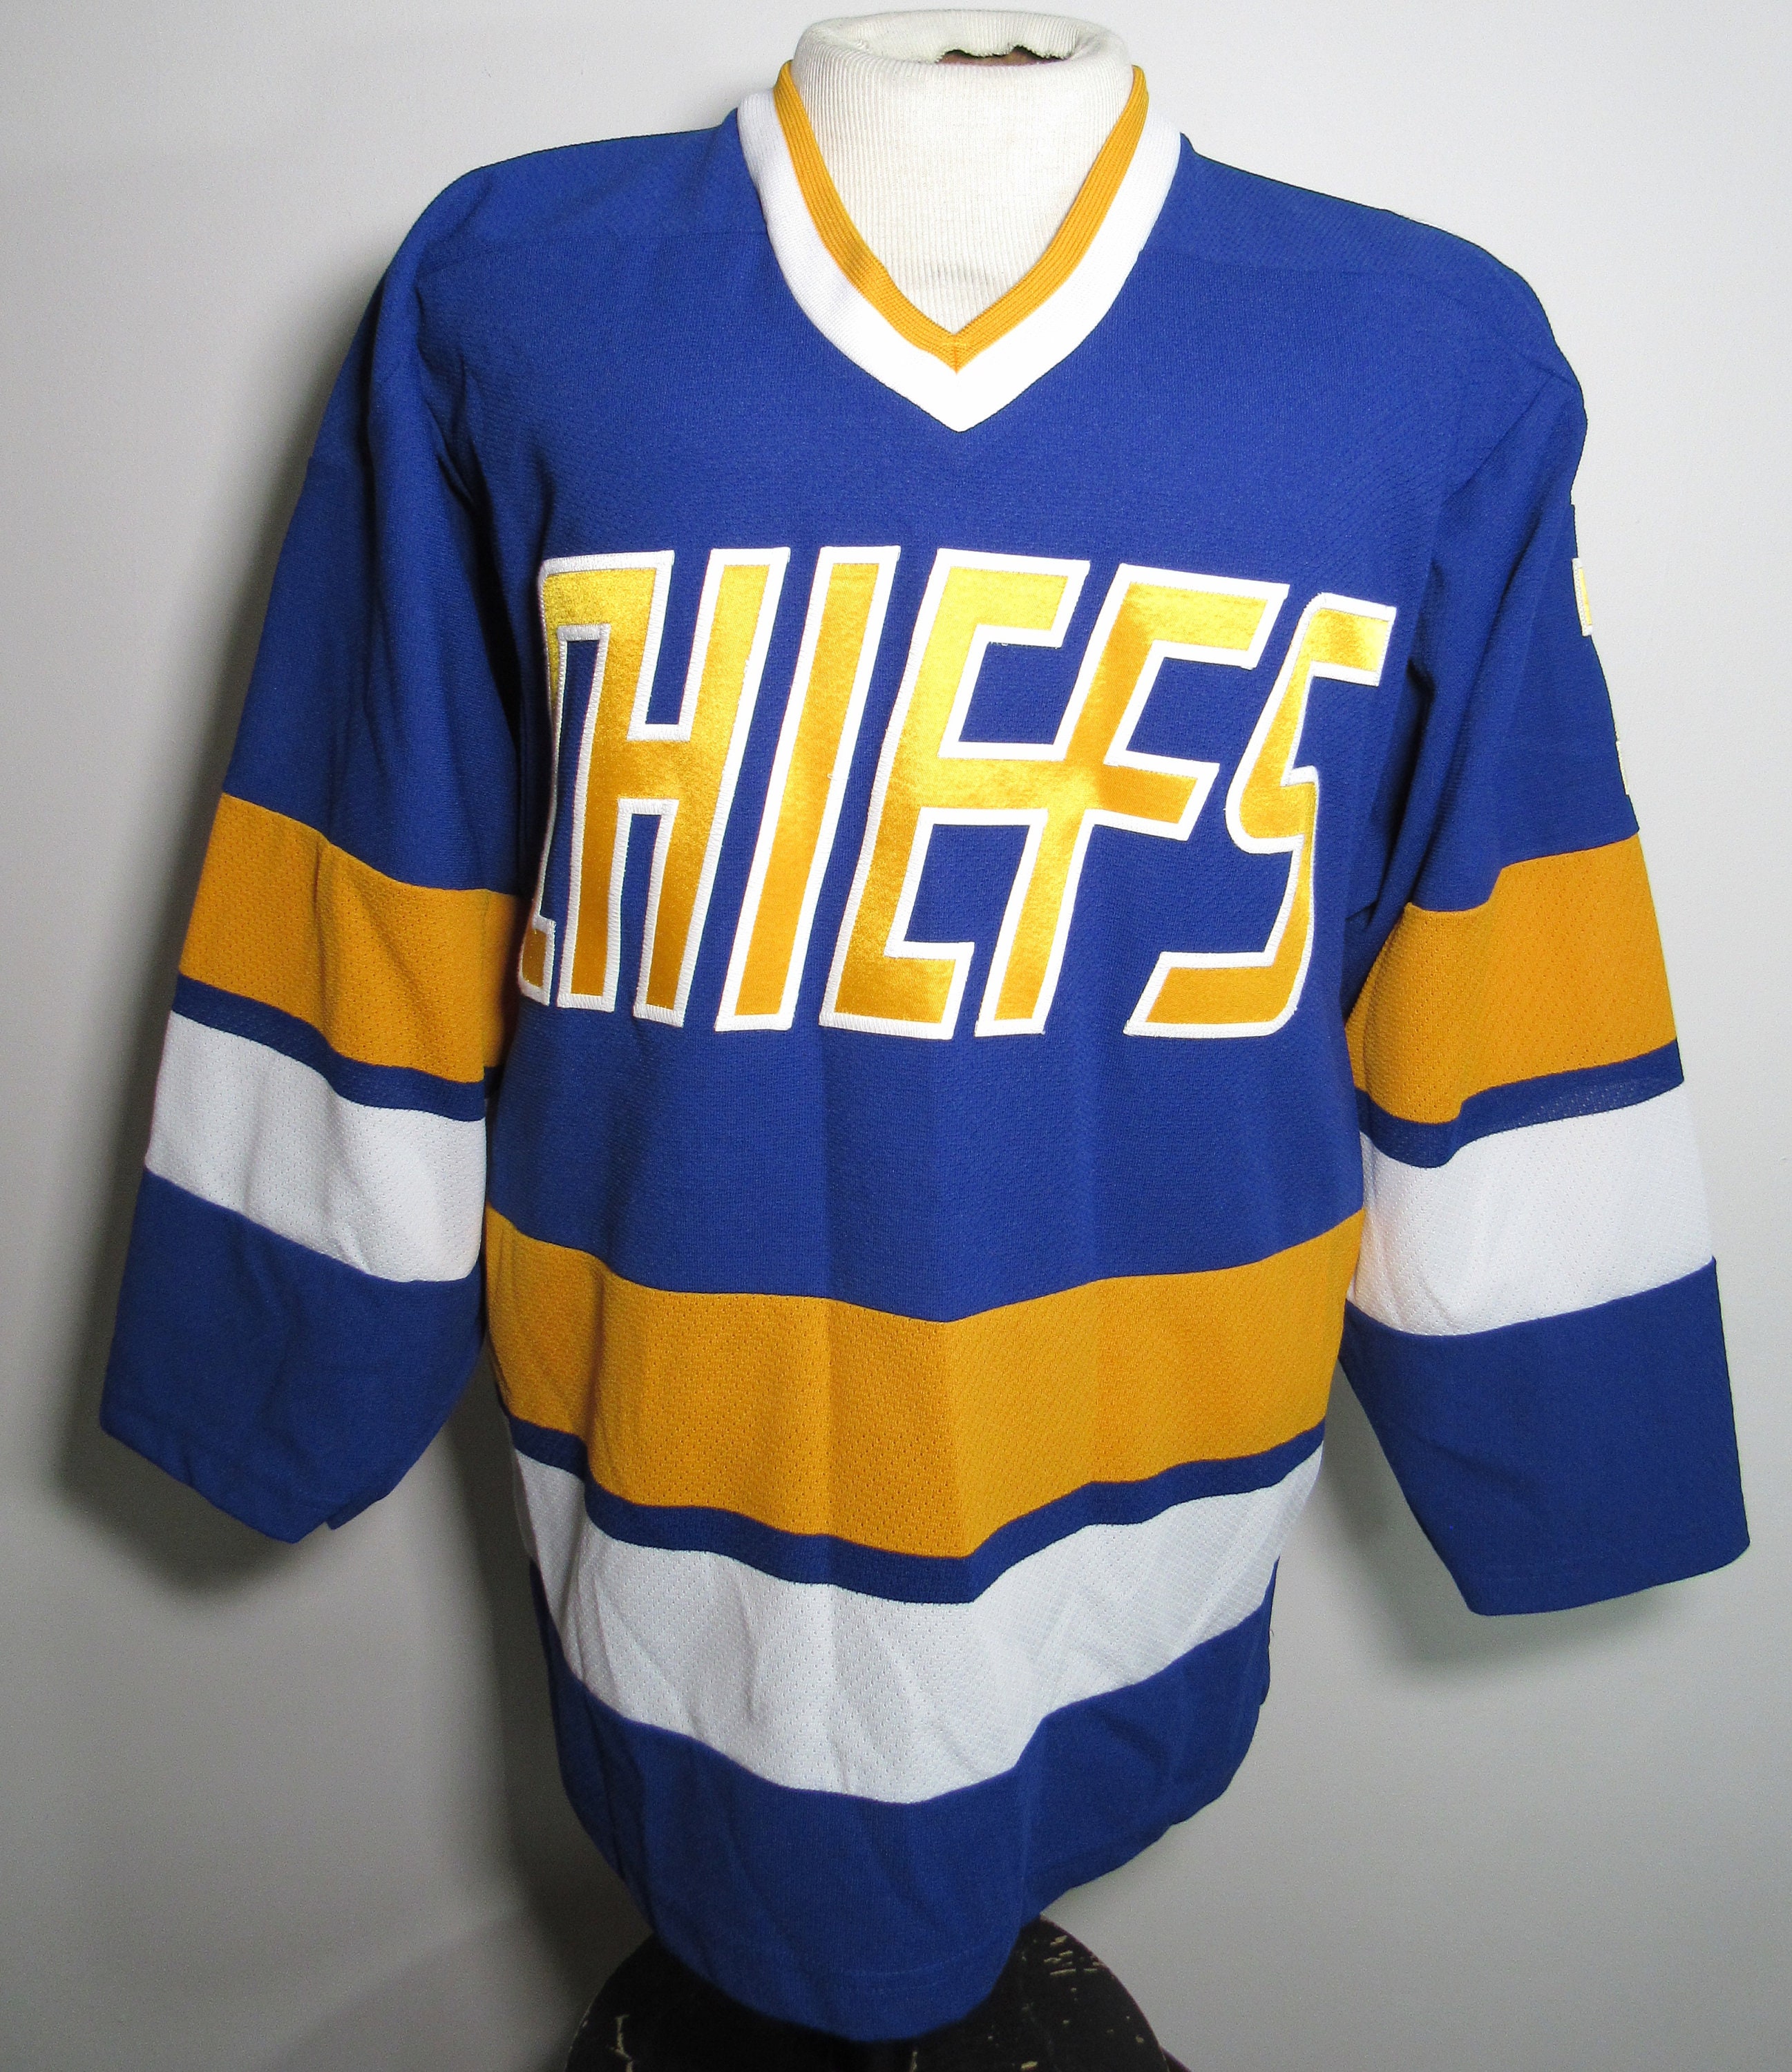 New York Slapshots vintage hockey jersey